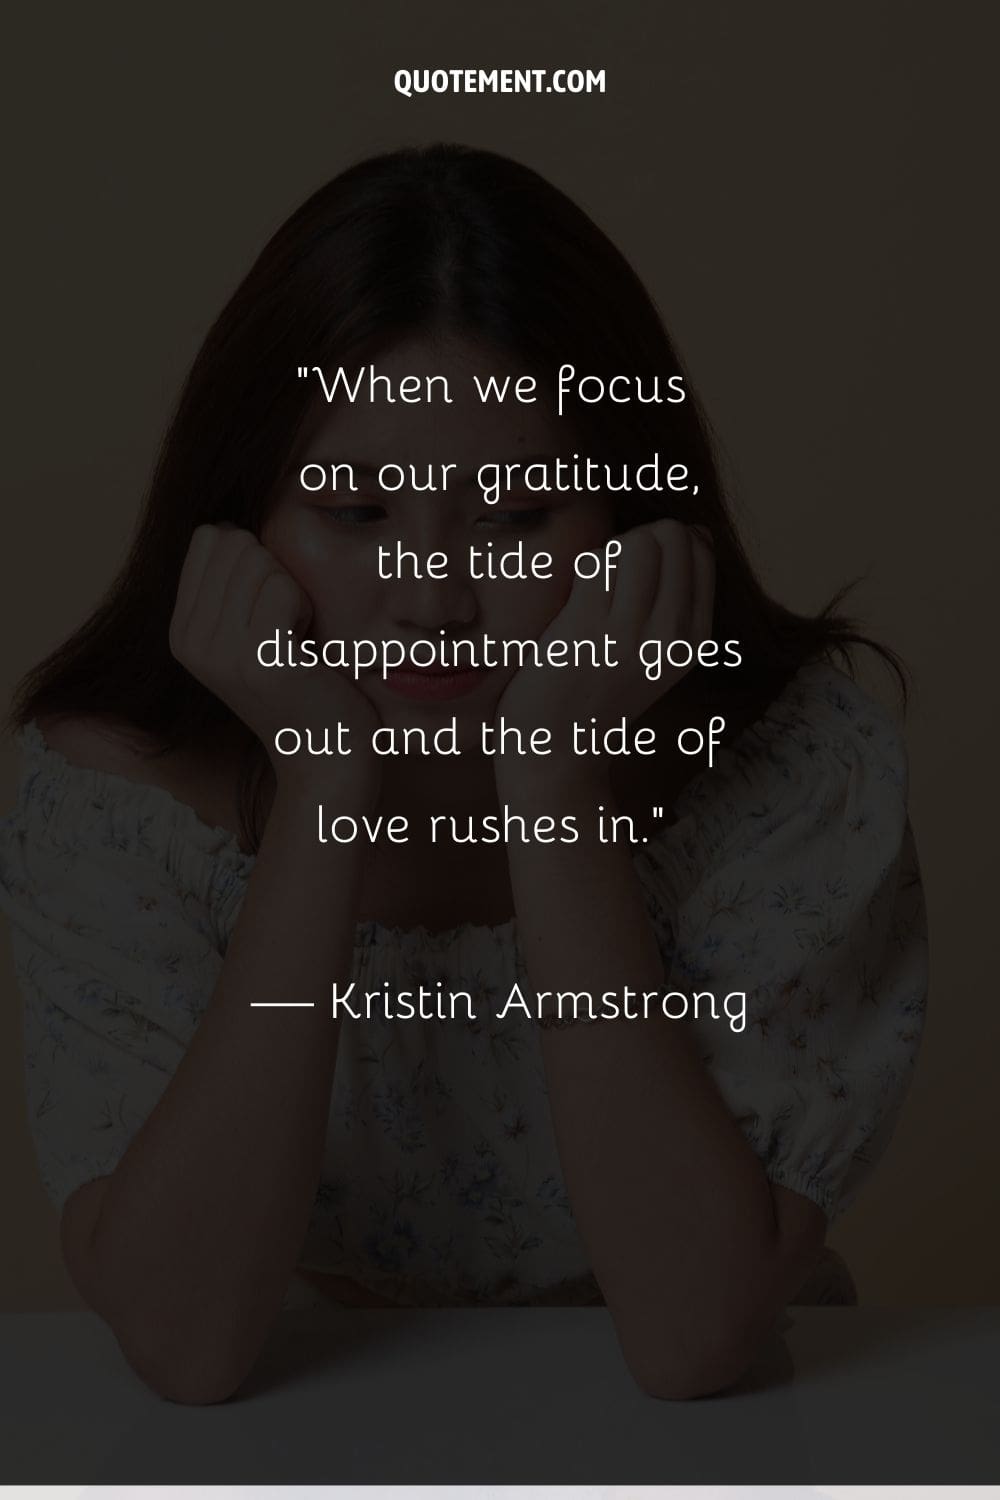 Cuando nos centramos en nuestra gratitud, la marea de la decepción desaparece y entra la marea del amor.